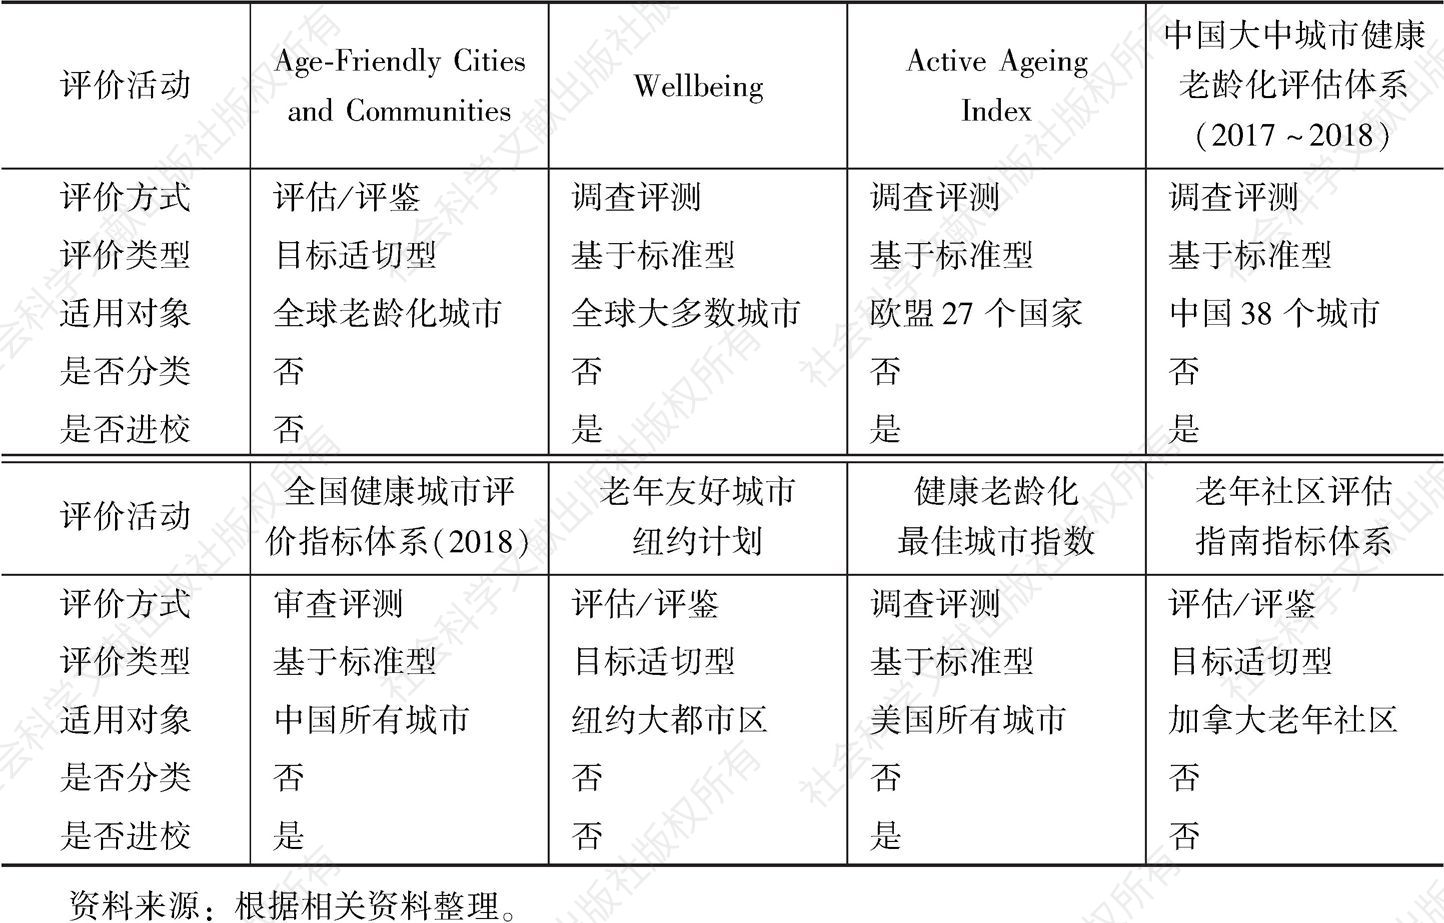 表3 八种健康老龄化城市治理指标体系的评价方式、类型等方面的比较